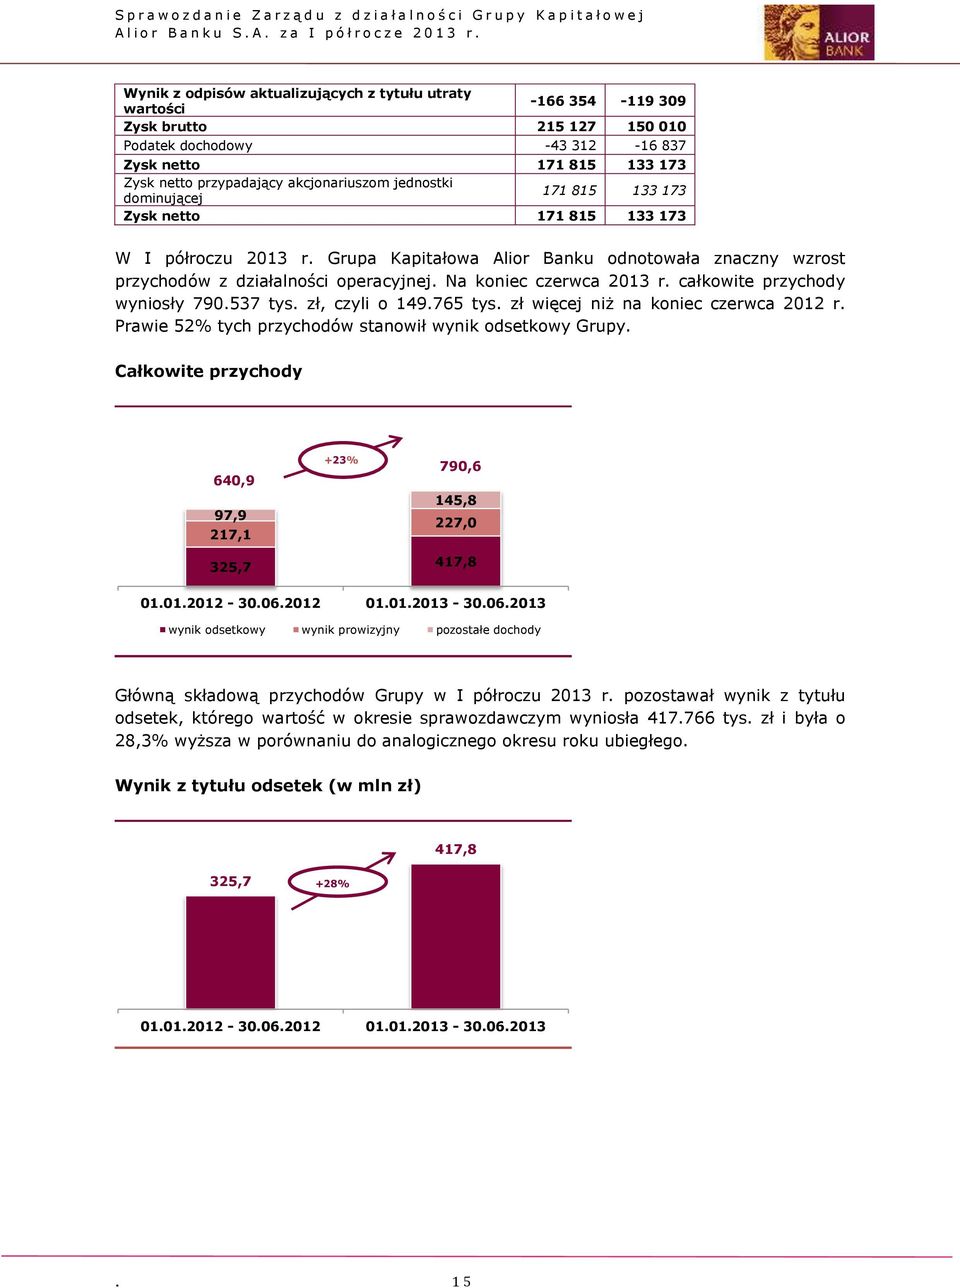 Na koniec czerwca 2013 r. całkowite przychody wyniosły 790.537 tys. zł, czyli o 149.765 tys. zł więcej niż na koniec czerwca 2012 r. Prawie 52% tych przychodów stanowił wynik odsetkowy Grupy.